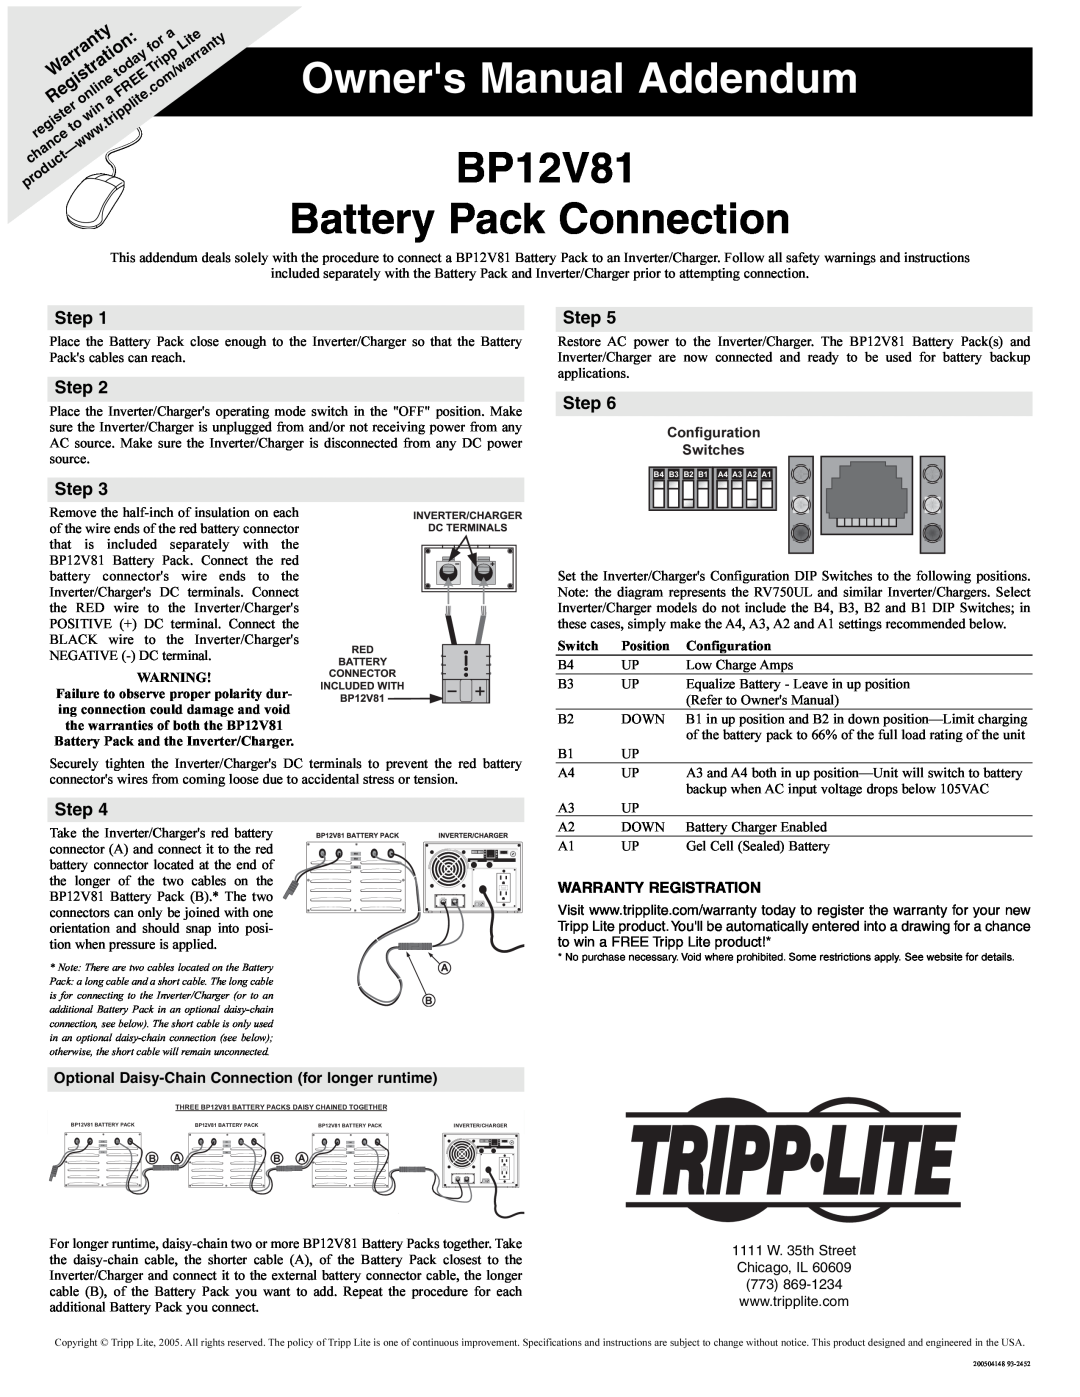 Tripp Lite owner manual BP12V81 Battery Pack Connection, Step, Warranty Registration 